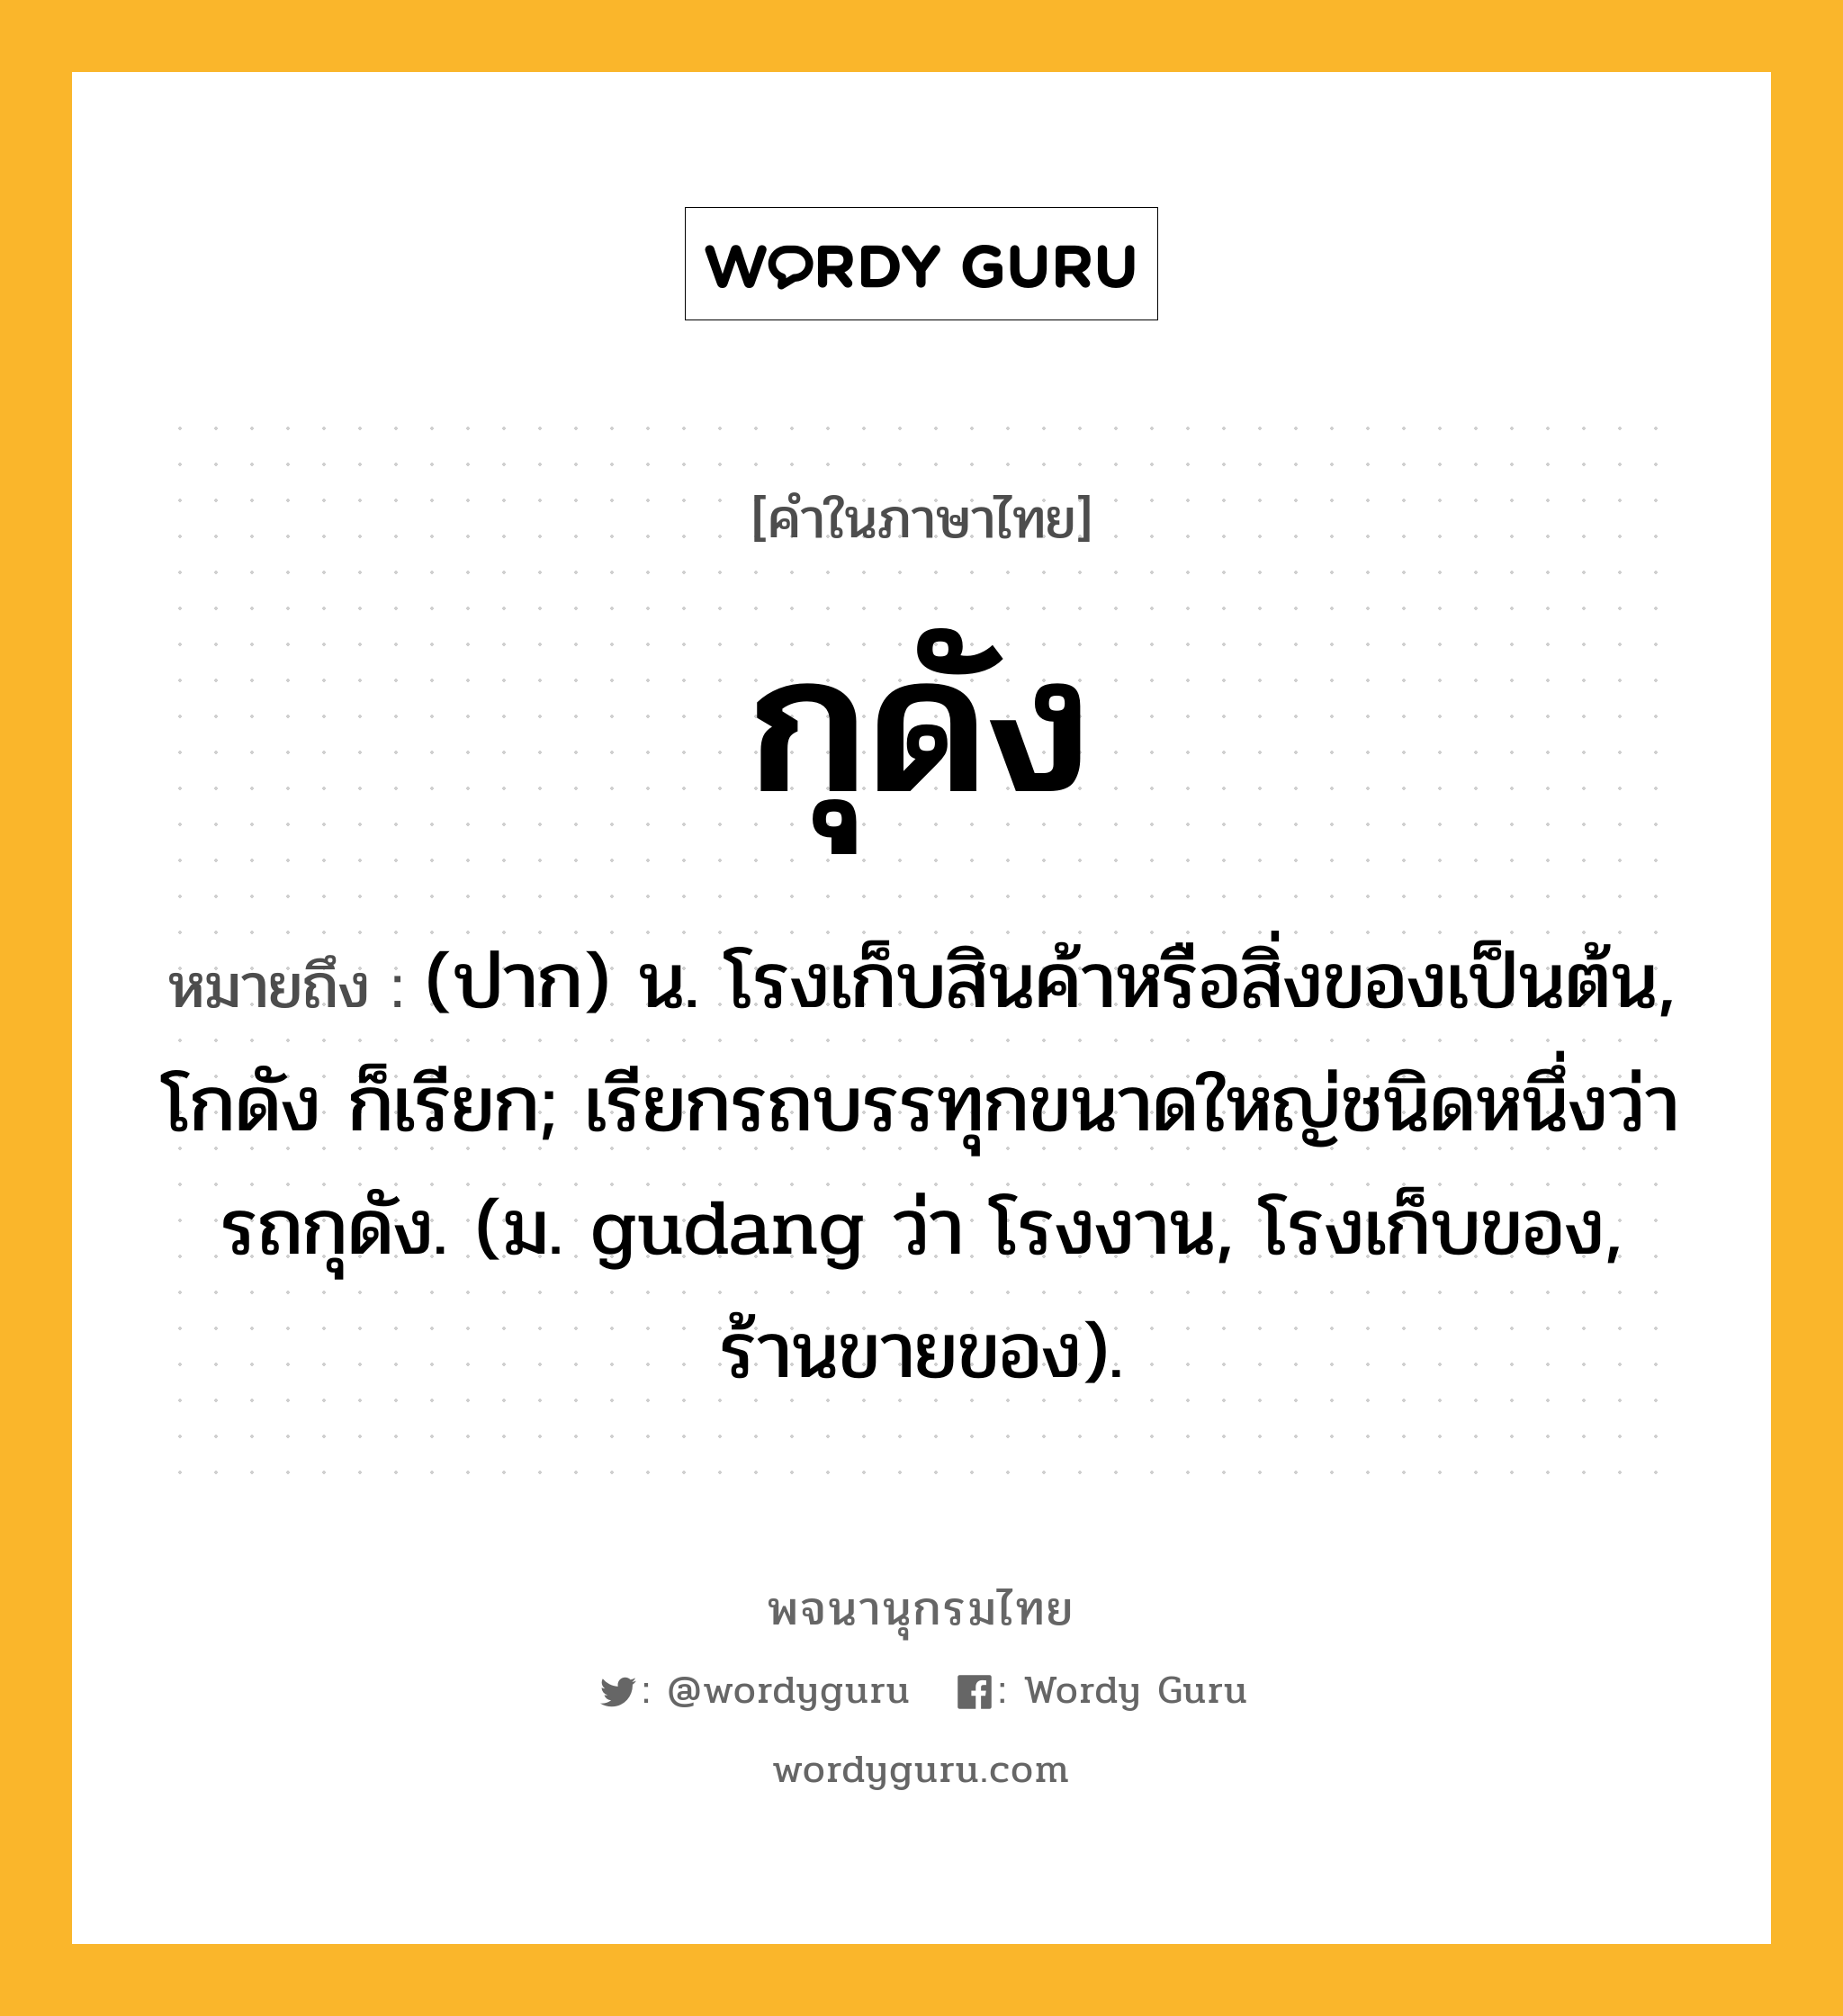 กุดัง หมายถึงอะไร?, คำในภาษาไทย กุดัง หมายถึง (ปาก) น. โรงเก็บสินค้าหรือสิ่งของเป็นต้น, โกดัง ก็เรียก; เรียกรถบรรทุกขนาดใหญ่ชนิดหนึ่งว่า รถกุดัง. (ม. gudang ว่า โรงงาน, โรงเก็บของ, ร้านขายของ).